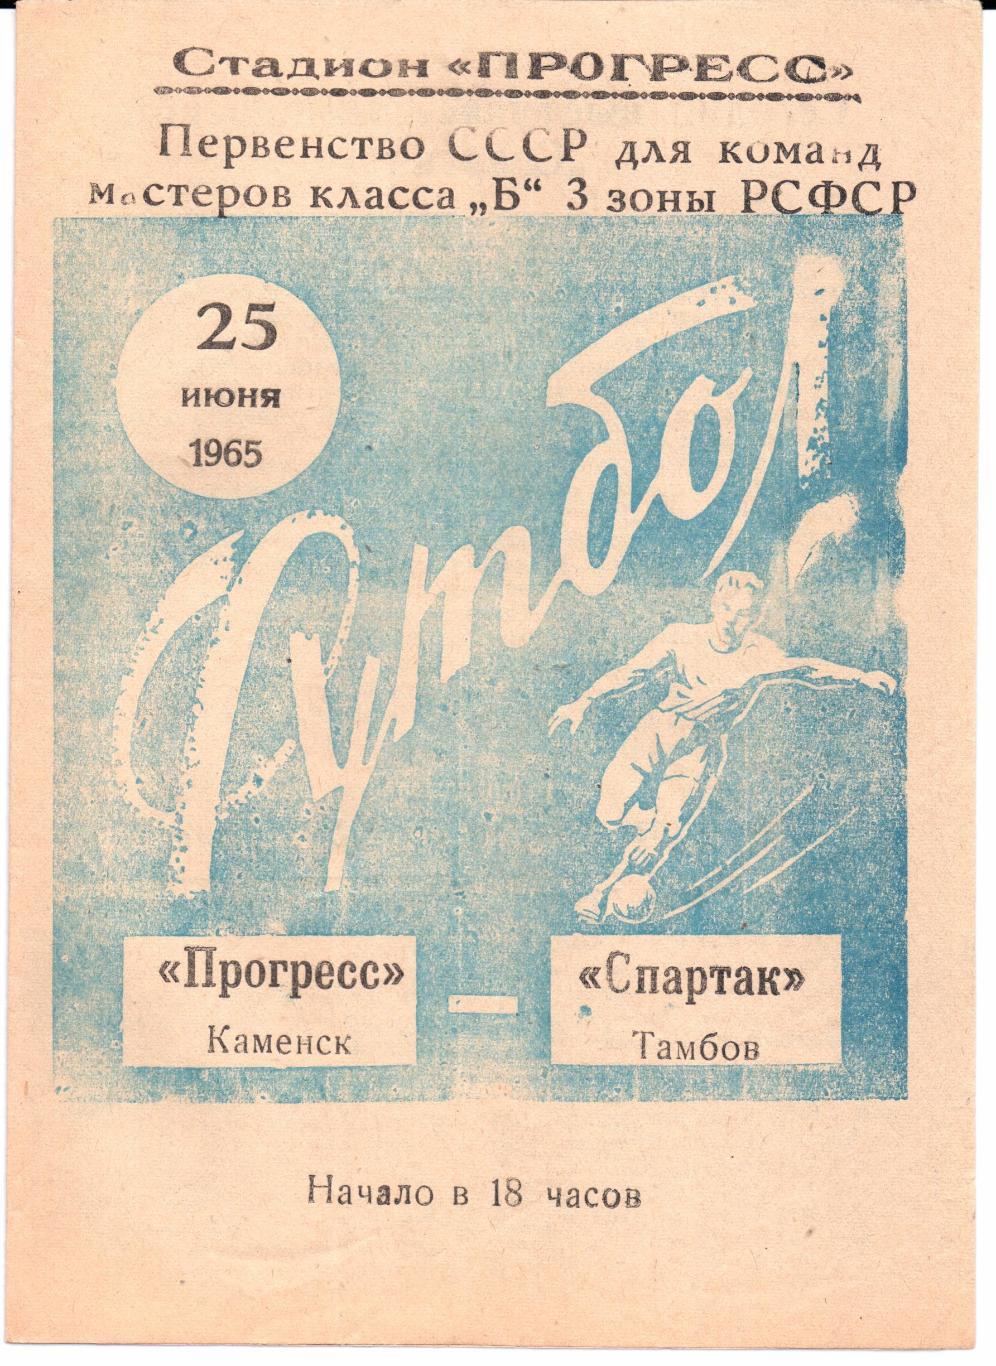 Класс Б 3-я зона Прогресс(Каменск)-Спартак(Та мбов)25.06.1965